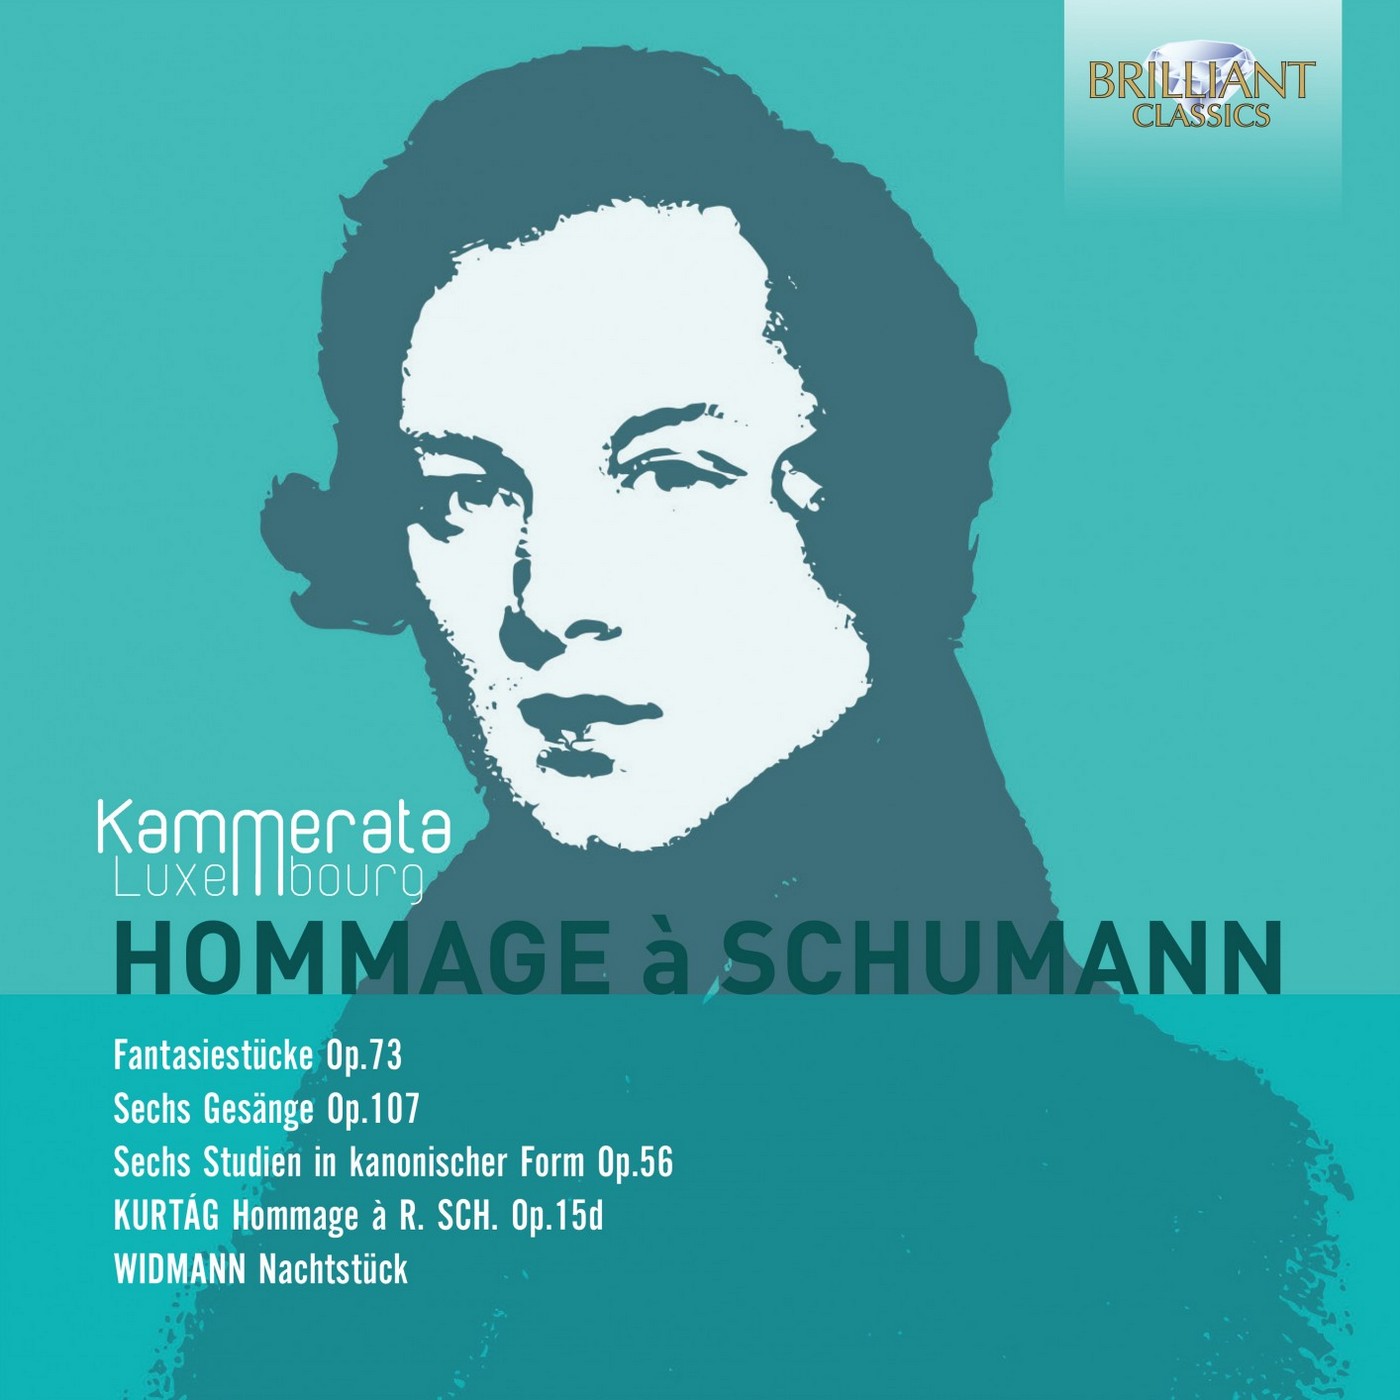 Kammerata Luxembourg - Hommage a Schumann (2019) [FLAC 24bit/96kHz]